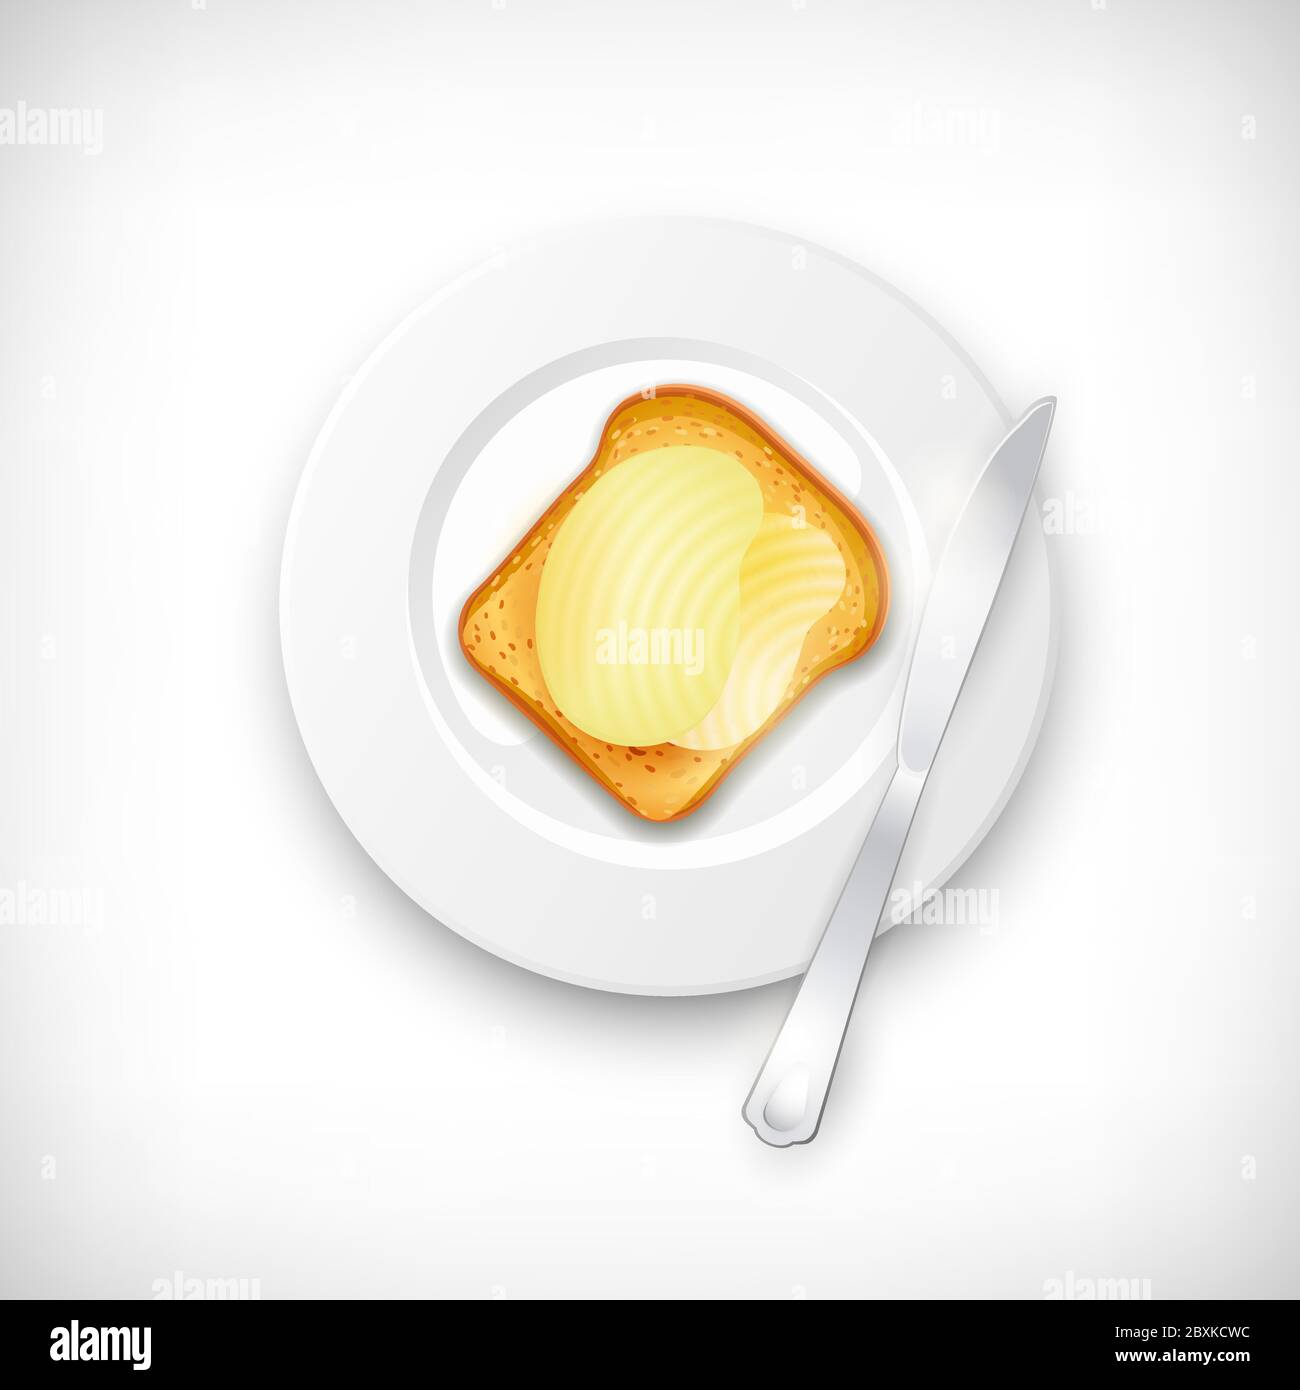 Pane tostato realistico con burro spalmato su piatto bianco. Coltello sulla piastra. Pranzo, cena, colazione, snack. Elementi per una sana cucina tema design. Illustrazione Vettoriale